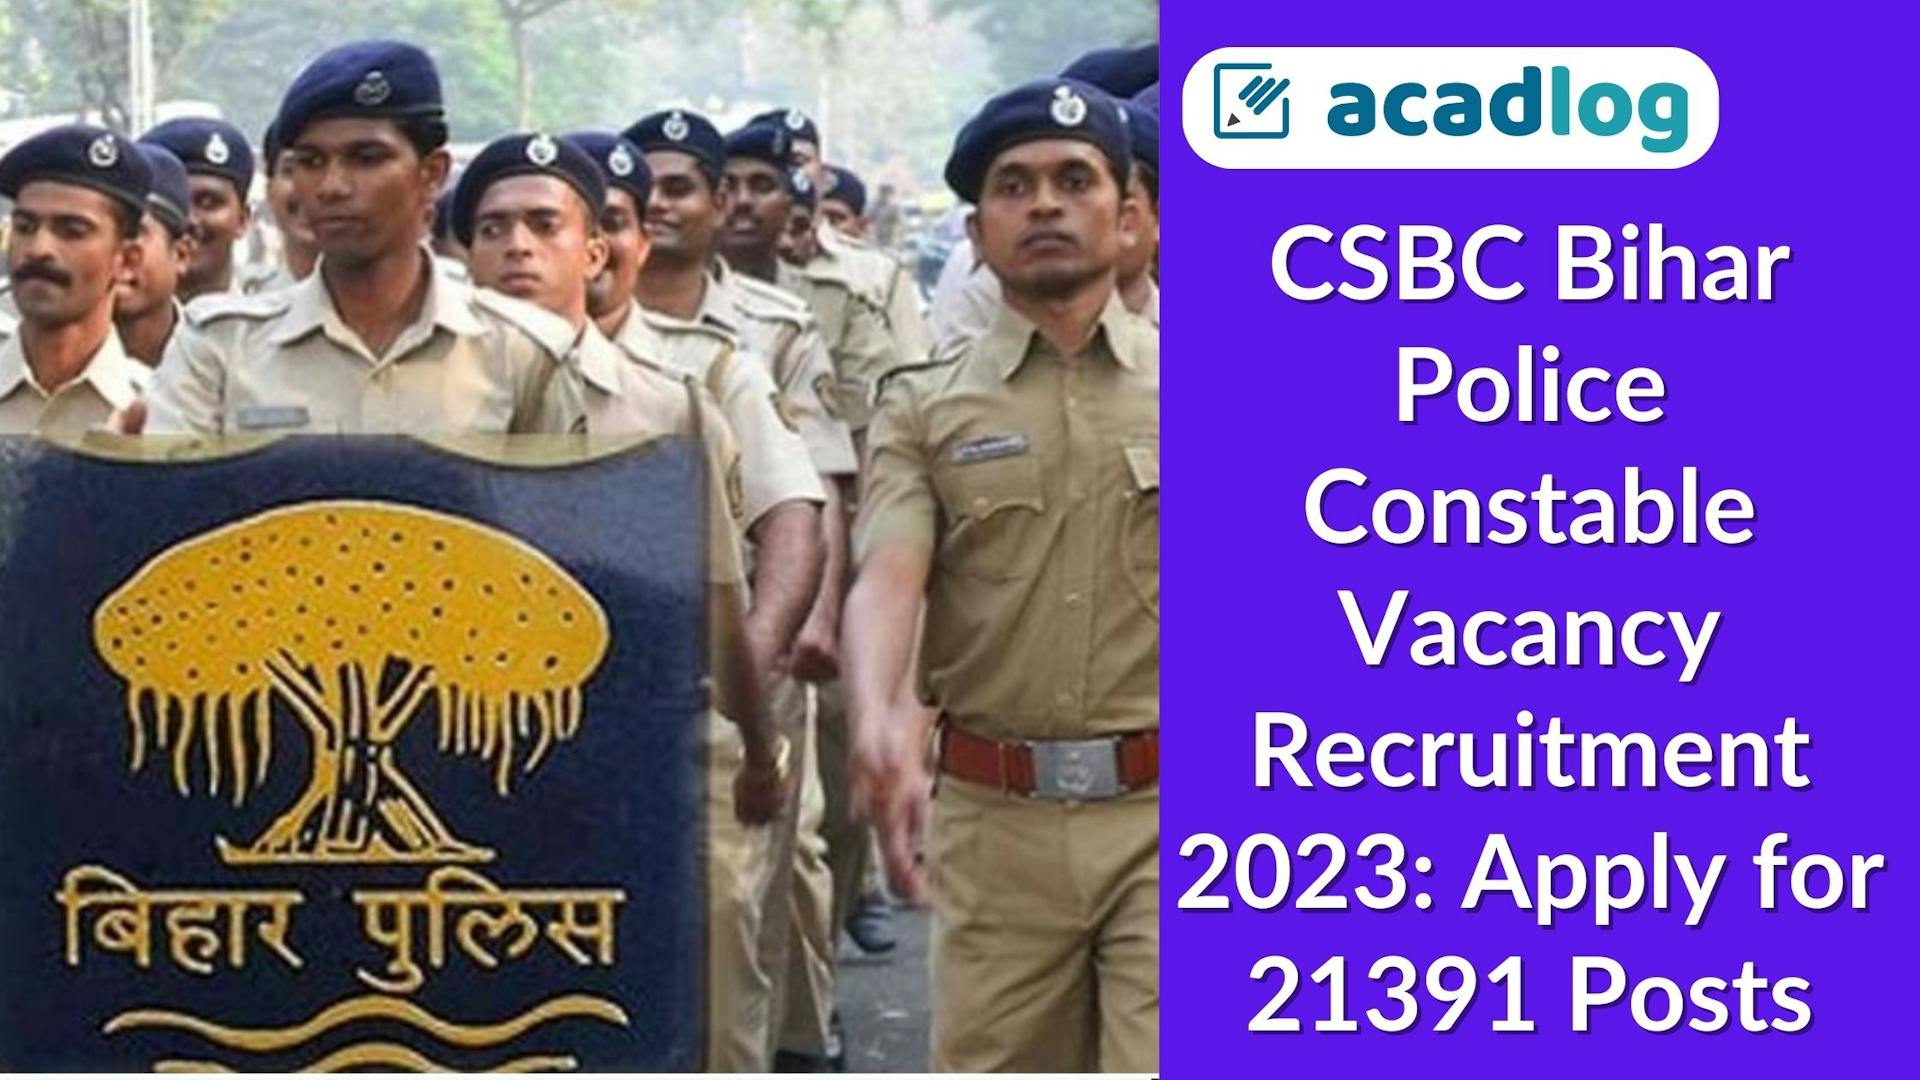 Free Job Alert Bihar: Bihar Police Vacancy 2023 For Constables